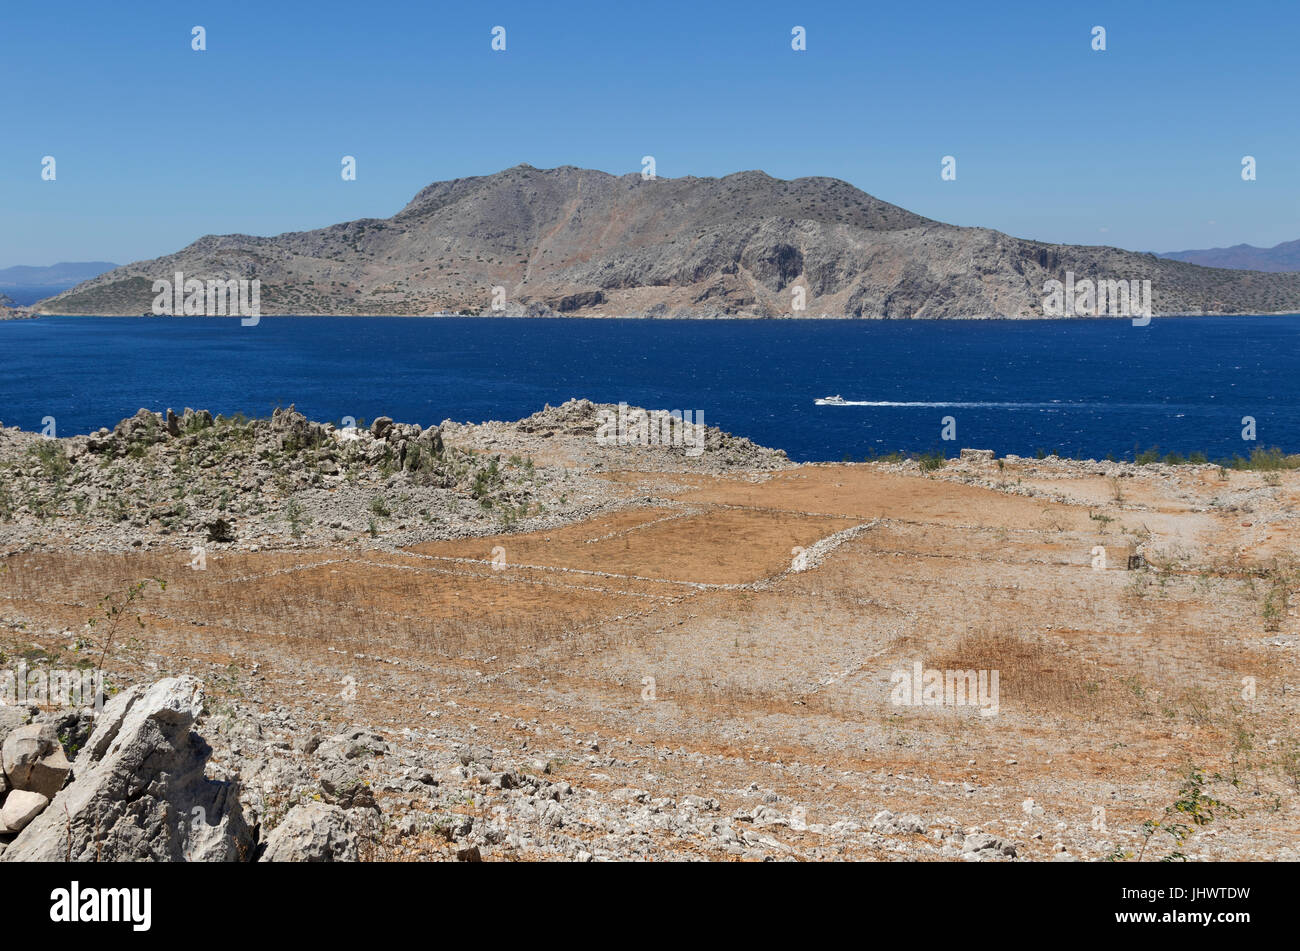 Symi Island, Egeo Meridionale, Grecia - prove di l'agricoltura su piccola scala è visibile nelle colline sopra pazienti pediatrici e altrove Foto Stock